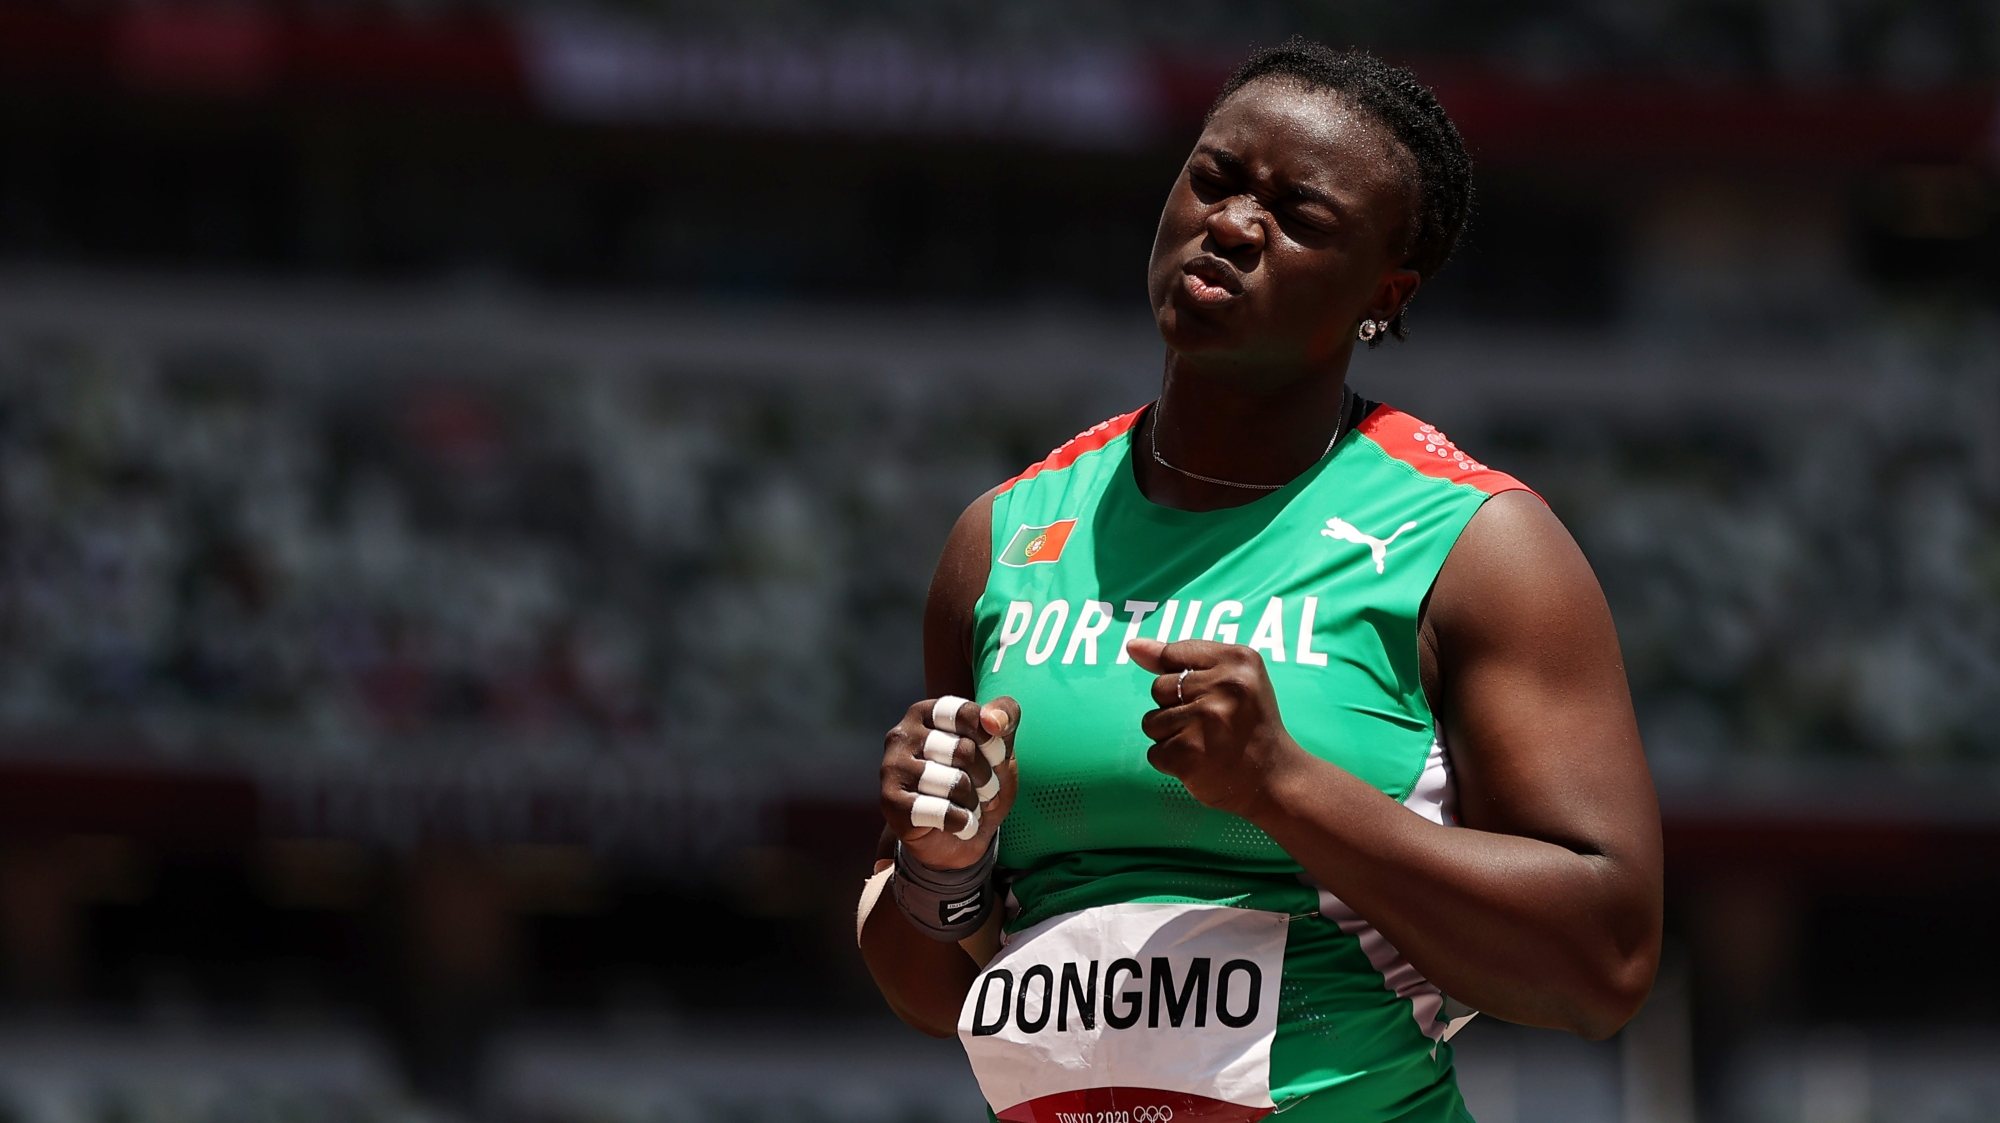 Auriol Dongmo acreditou que podia superar Valerie Adams nas duas últimas tentativas mas não fez acima de 19,57